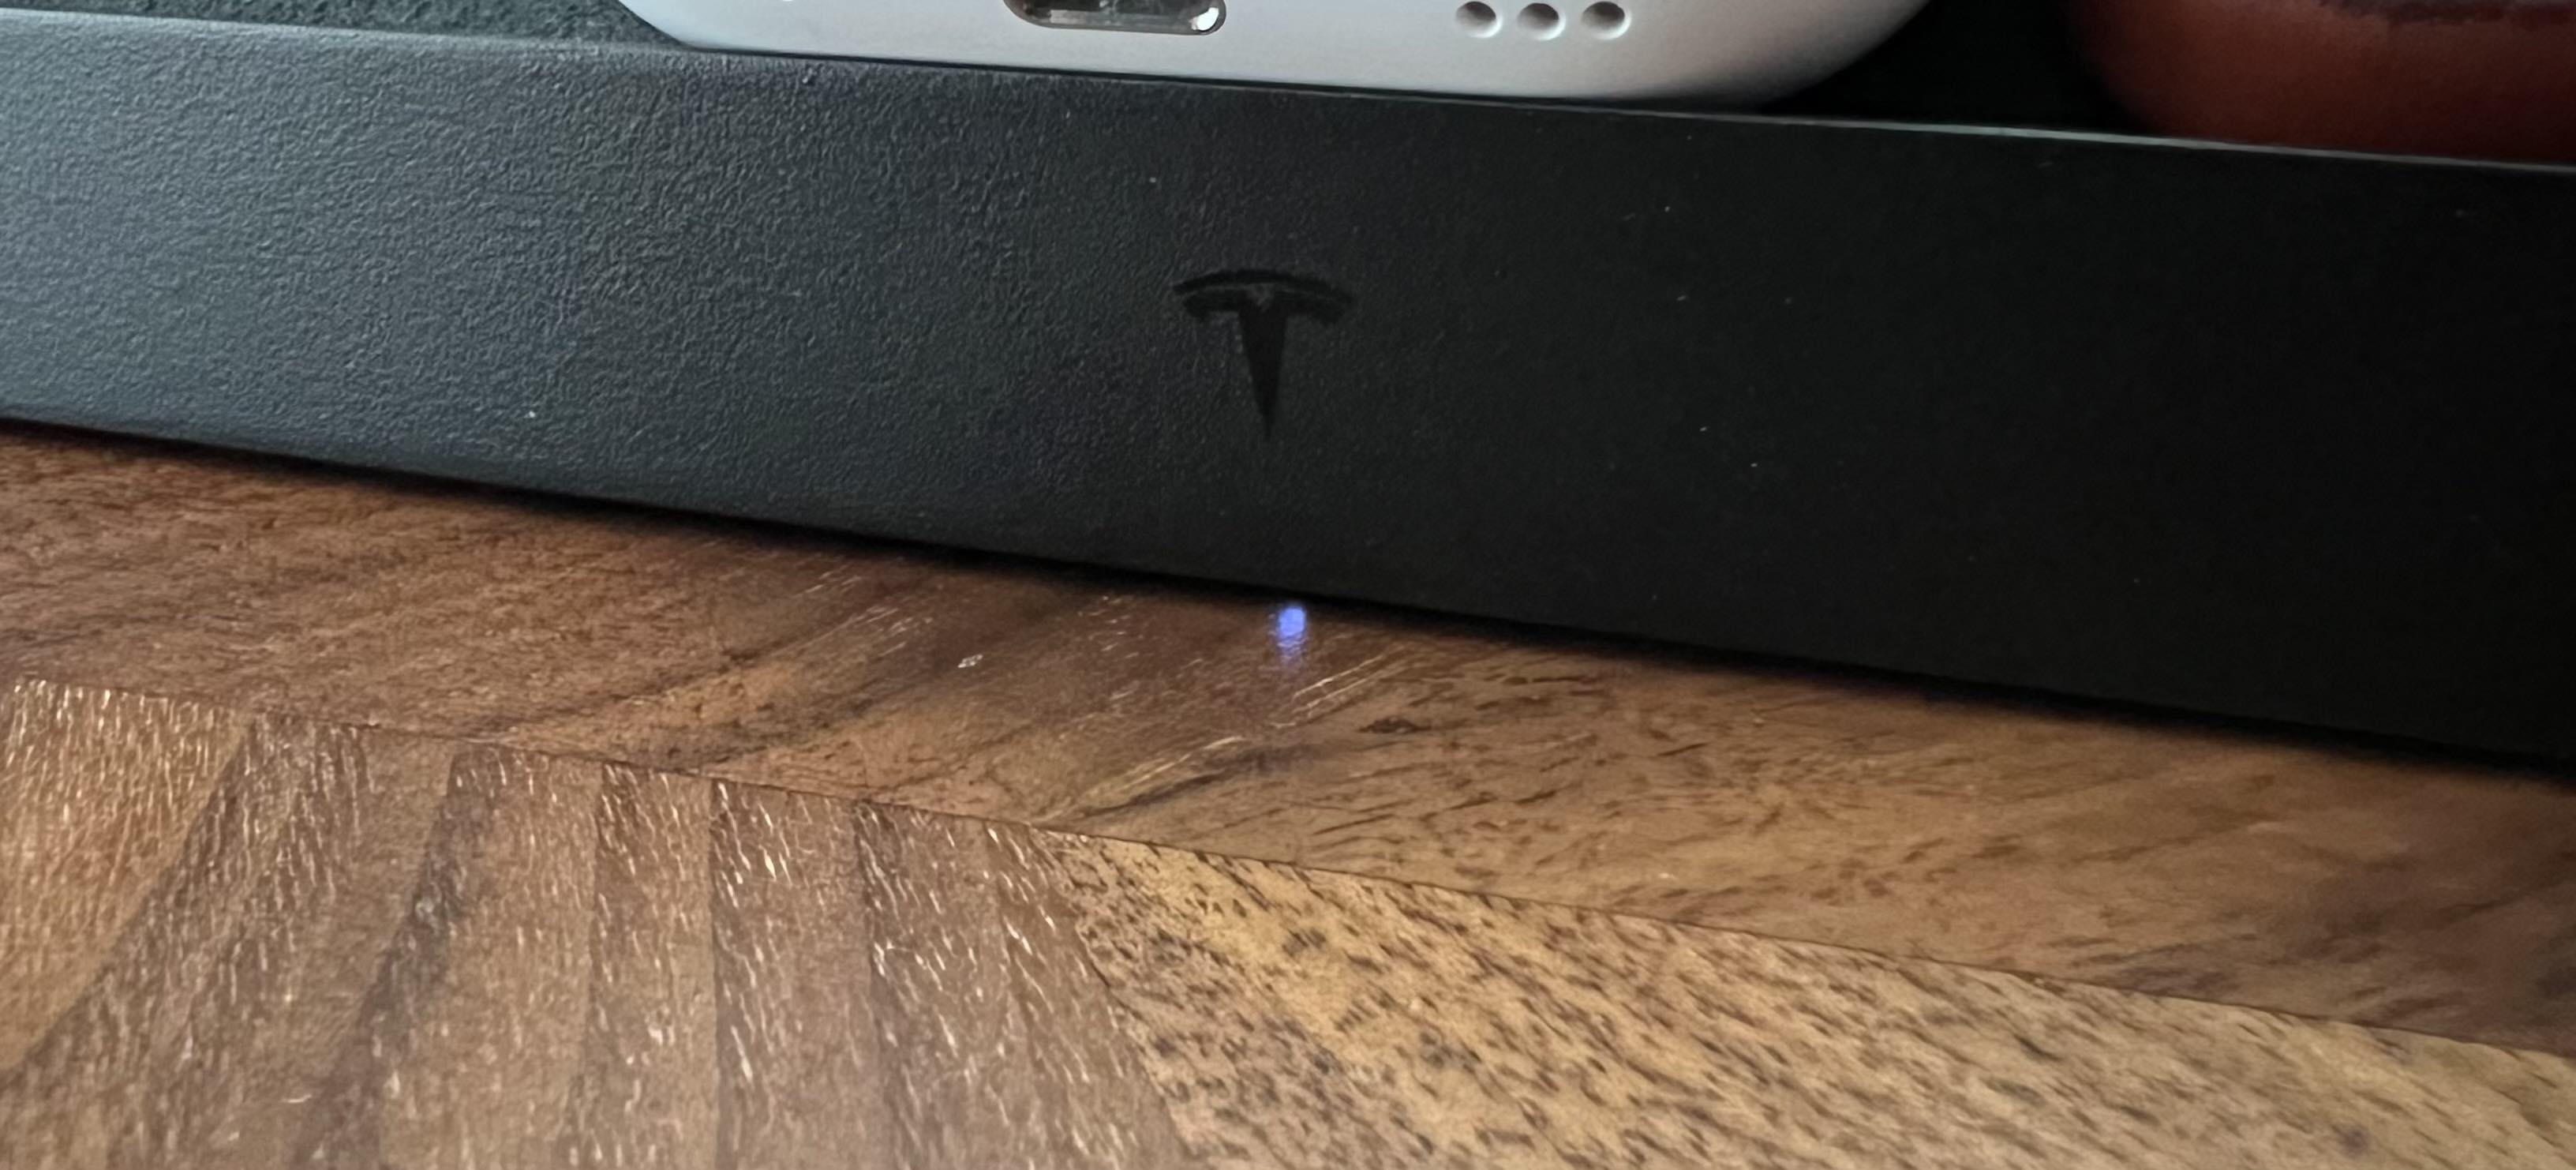 LED-indicator voor Tesla draadloos oplaadstation